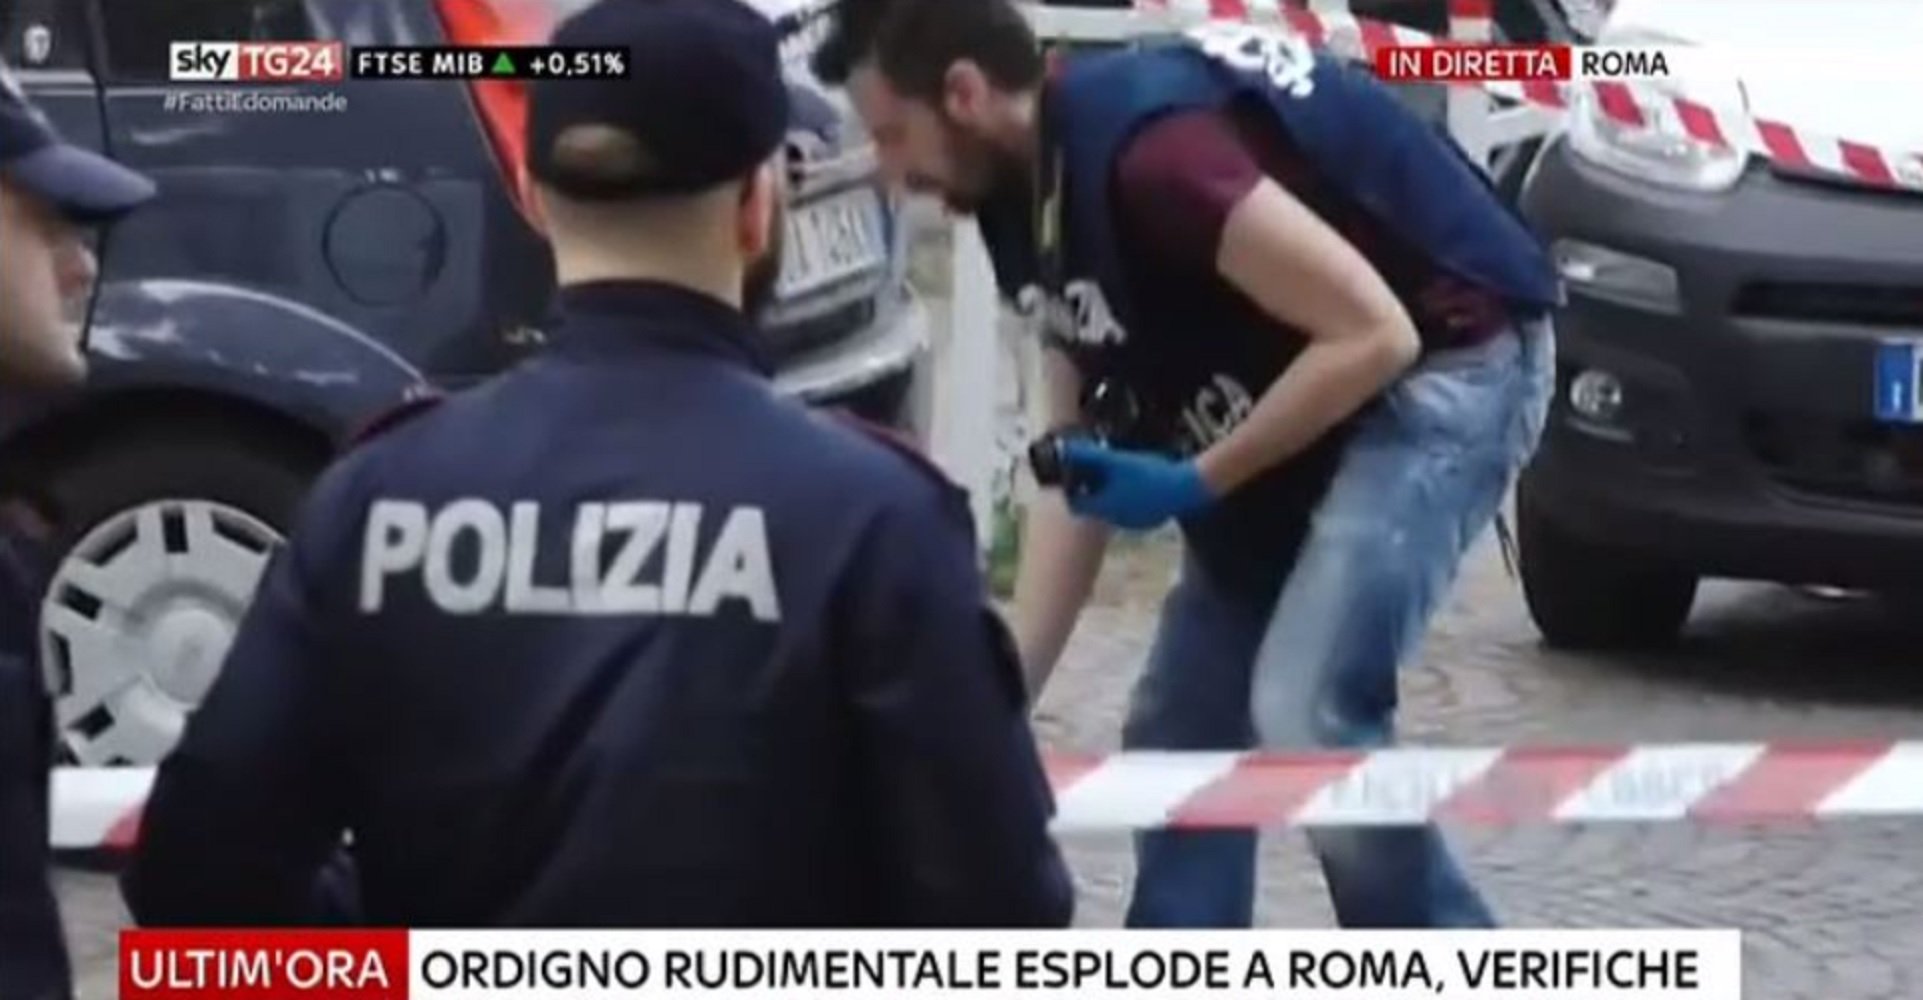 Explosión en Roma cerca de una oficina de correos